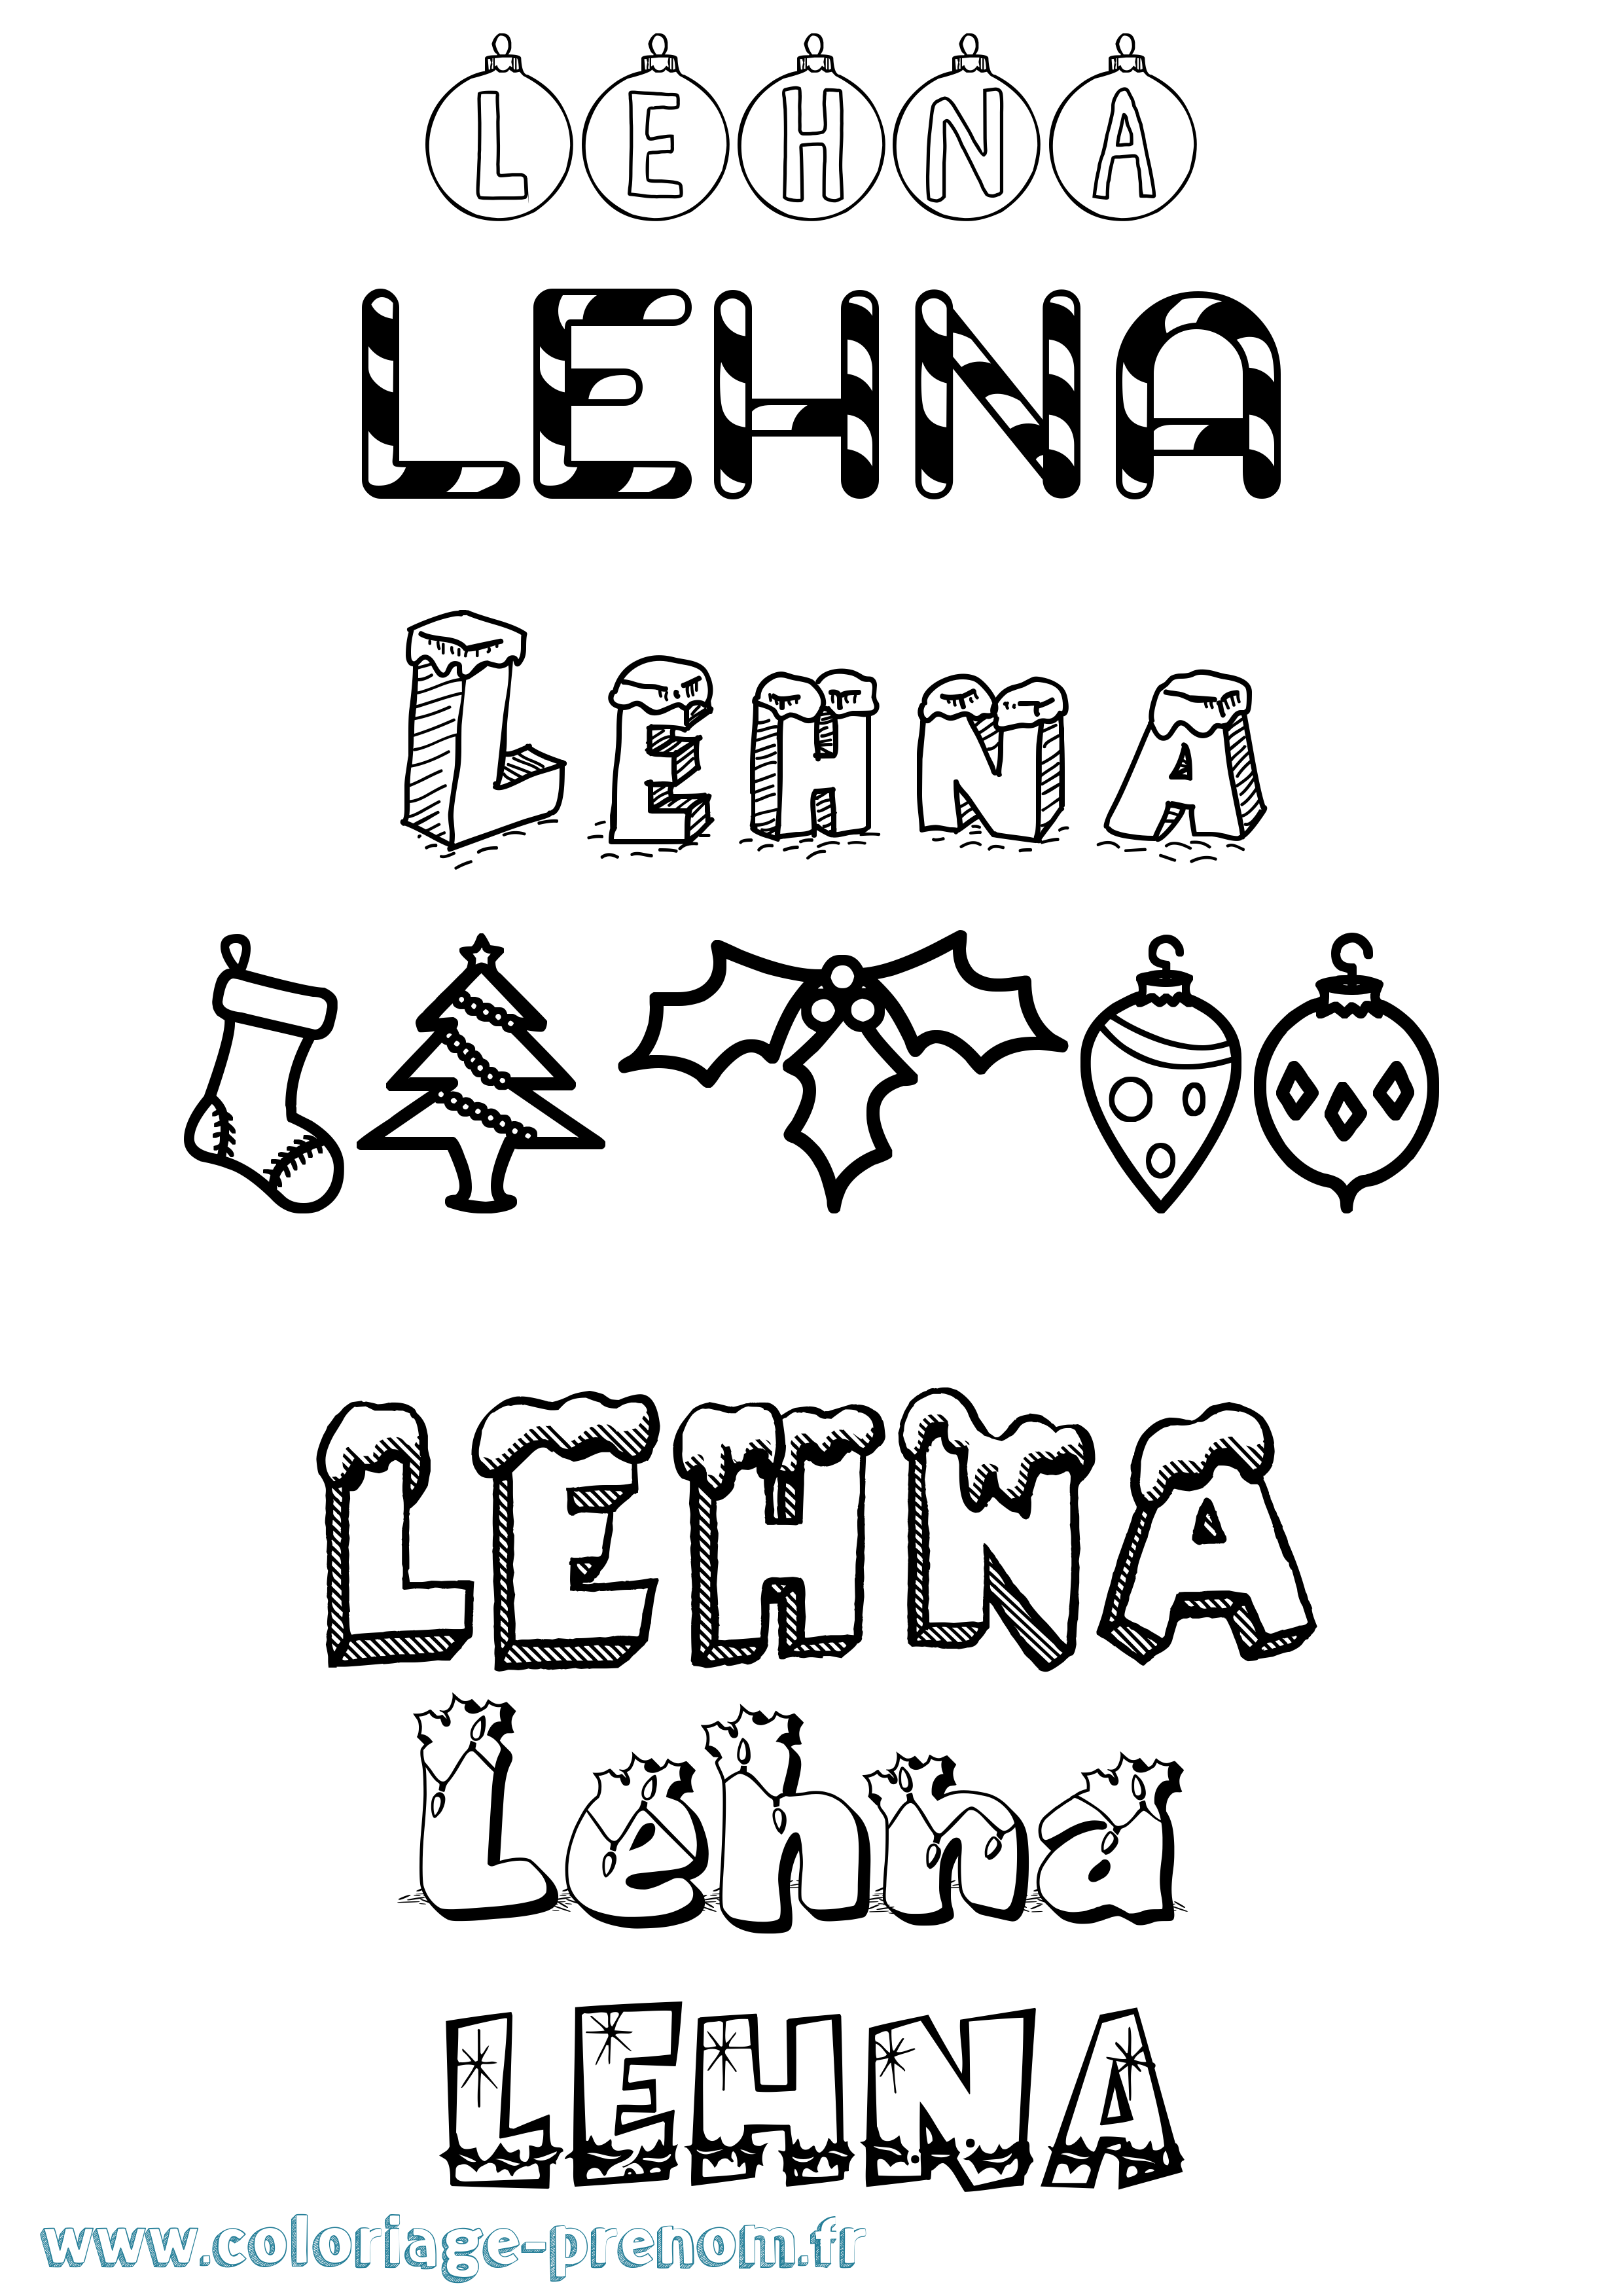 Coloriage prénom Lehna